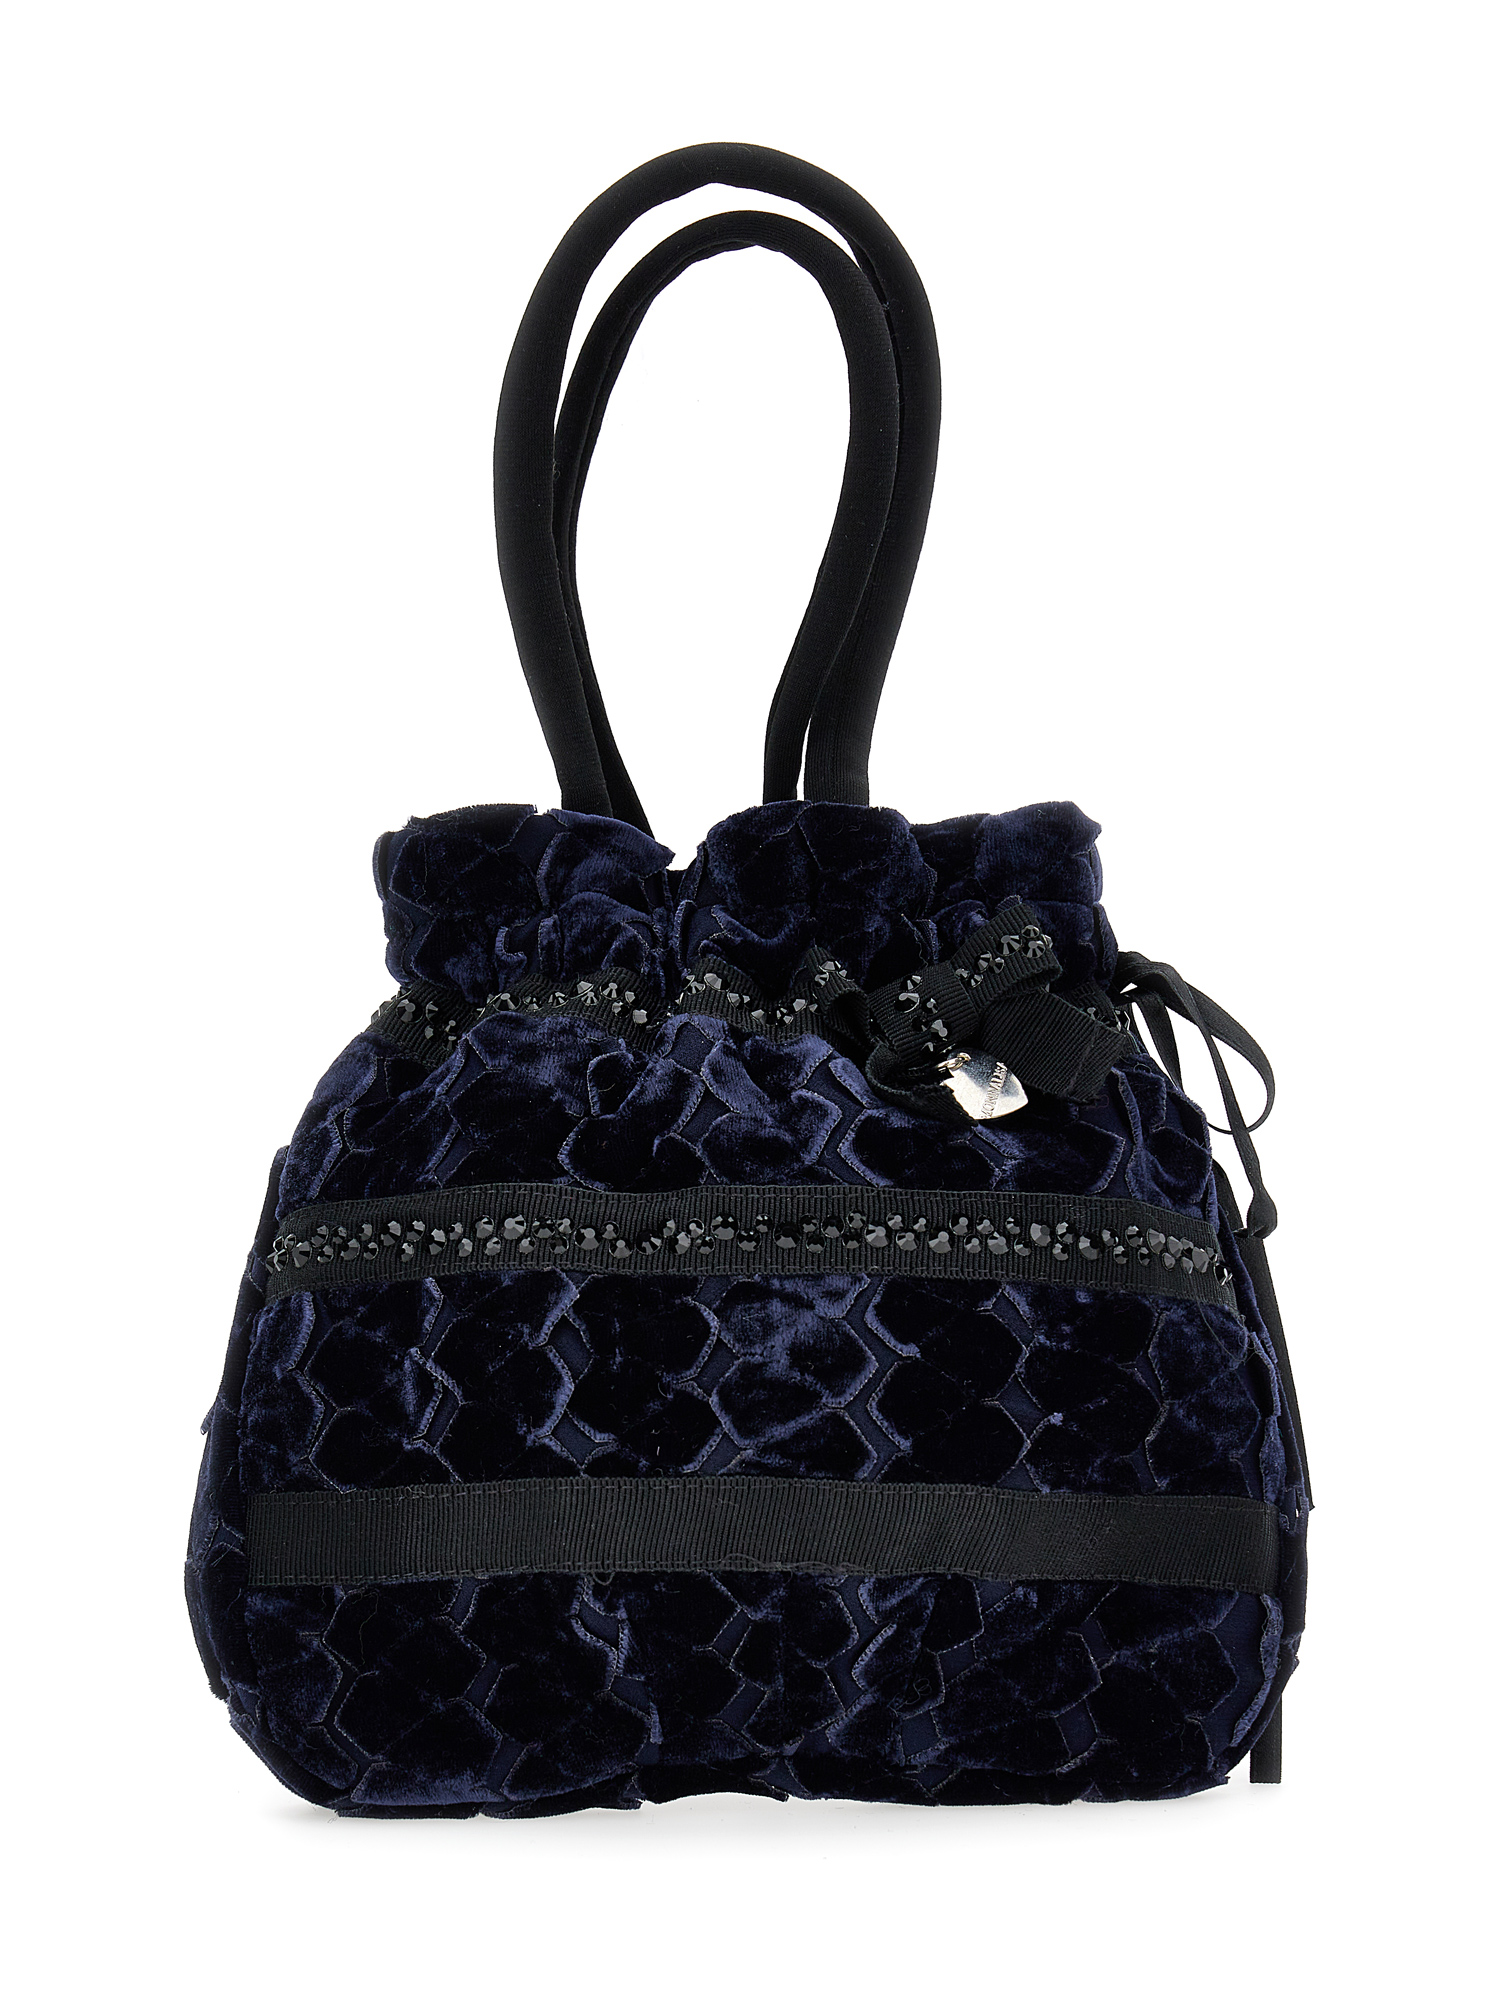 Monnalisa Velvet Bow Handbag In Navy Blue